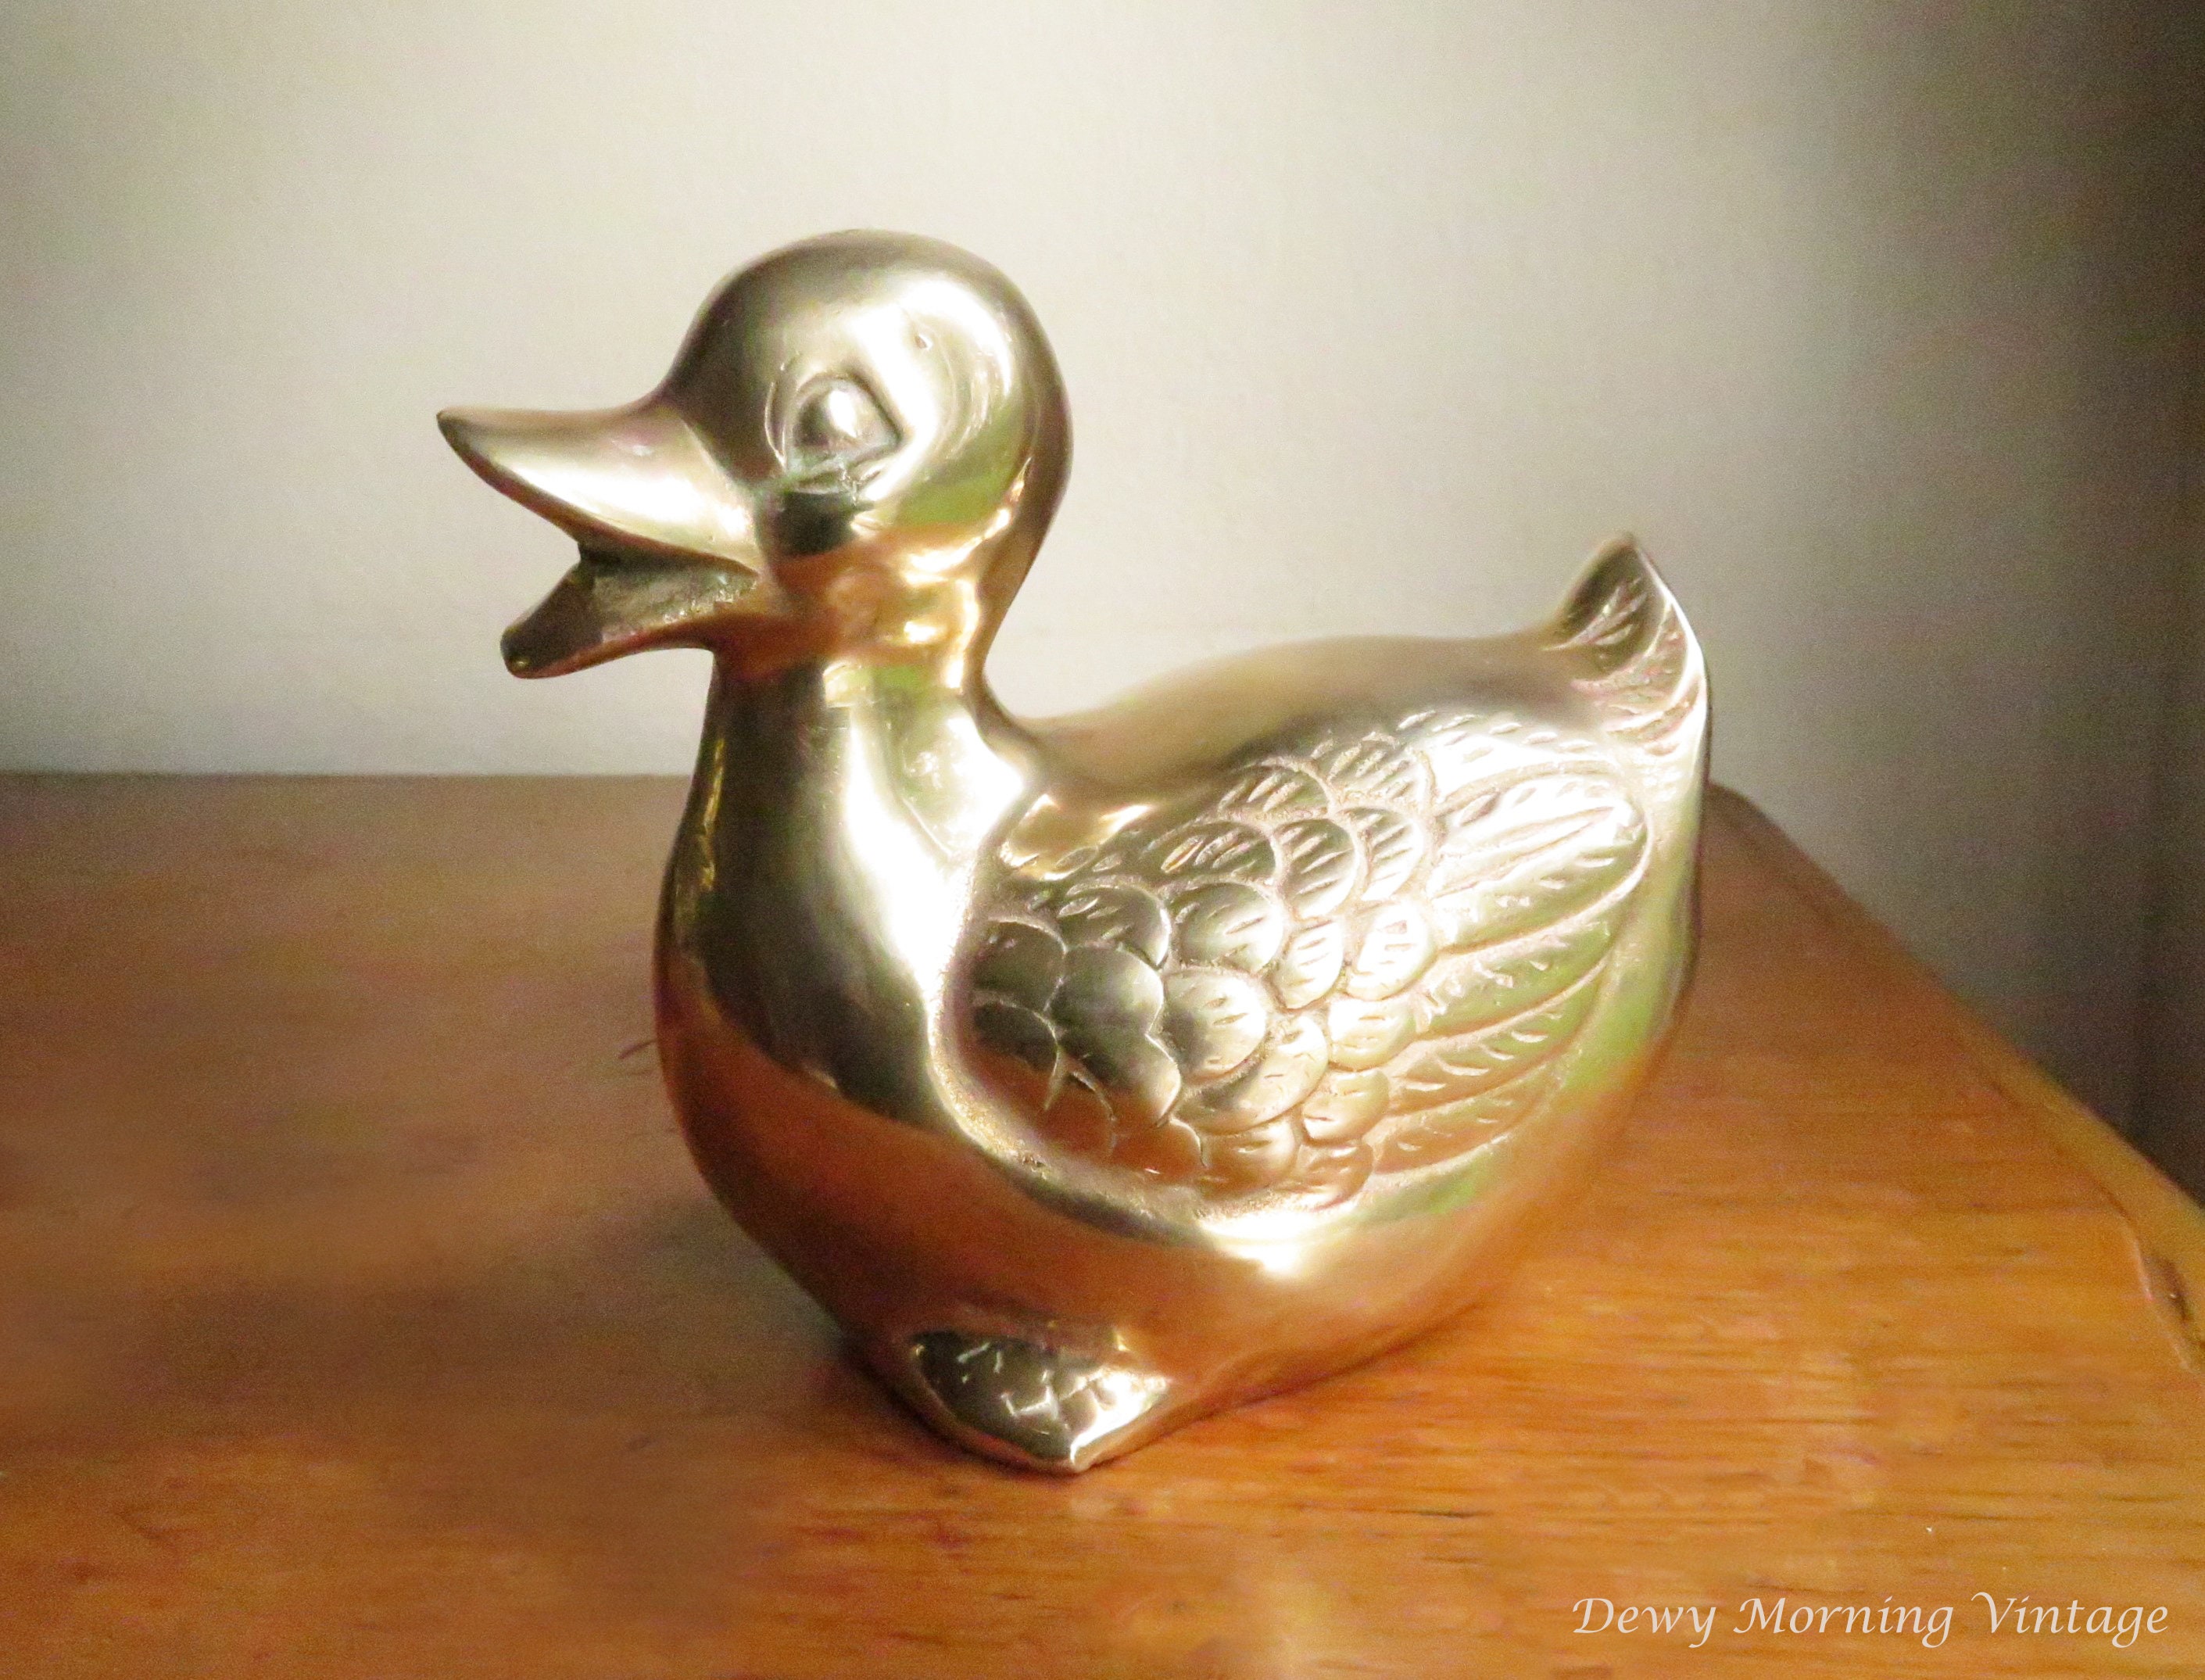 Vintage Brass Woodland Animal Figure Mid Century Statue Baby Nursery Decor Duckling Duck Figurine Bird Paperweight